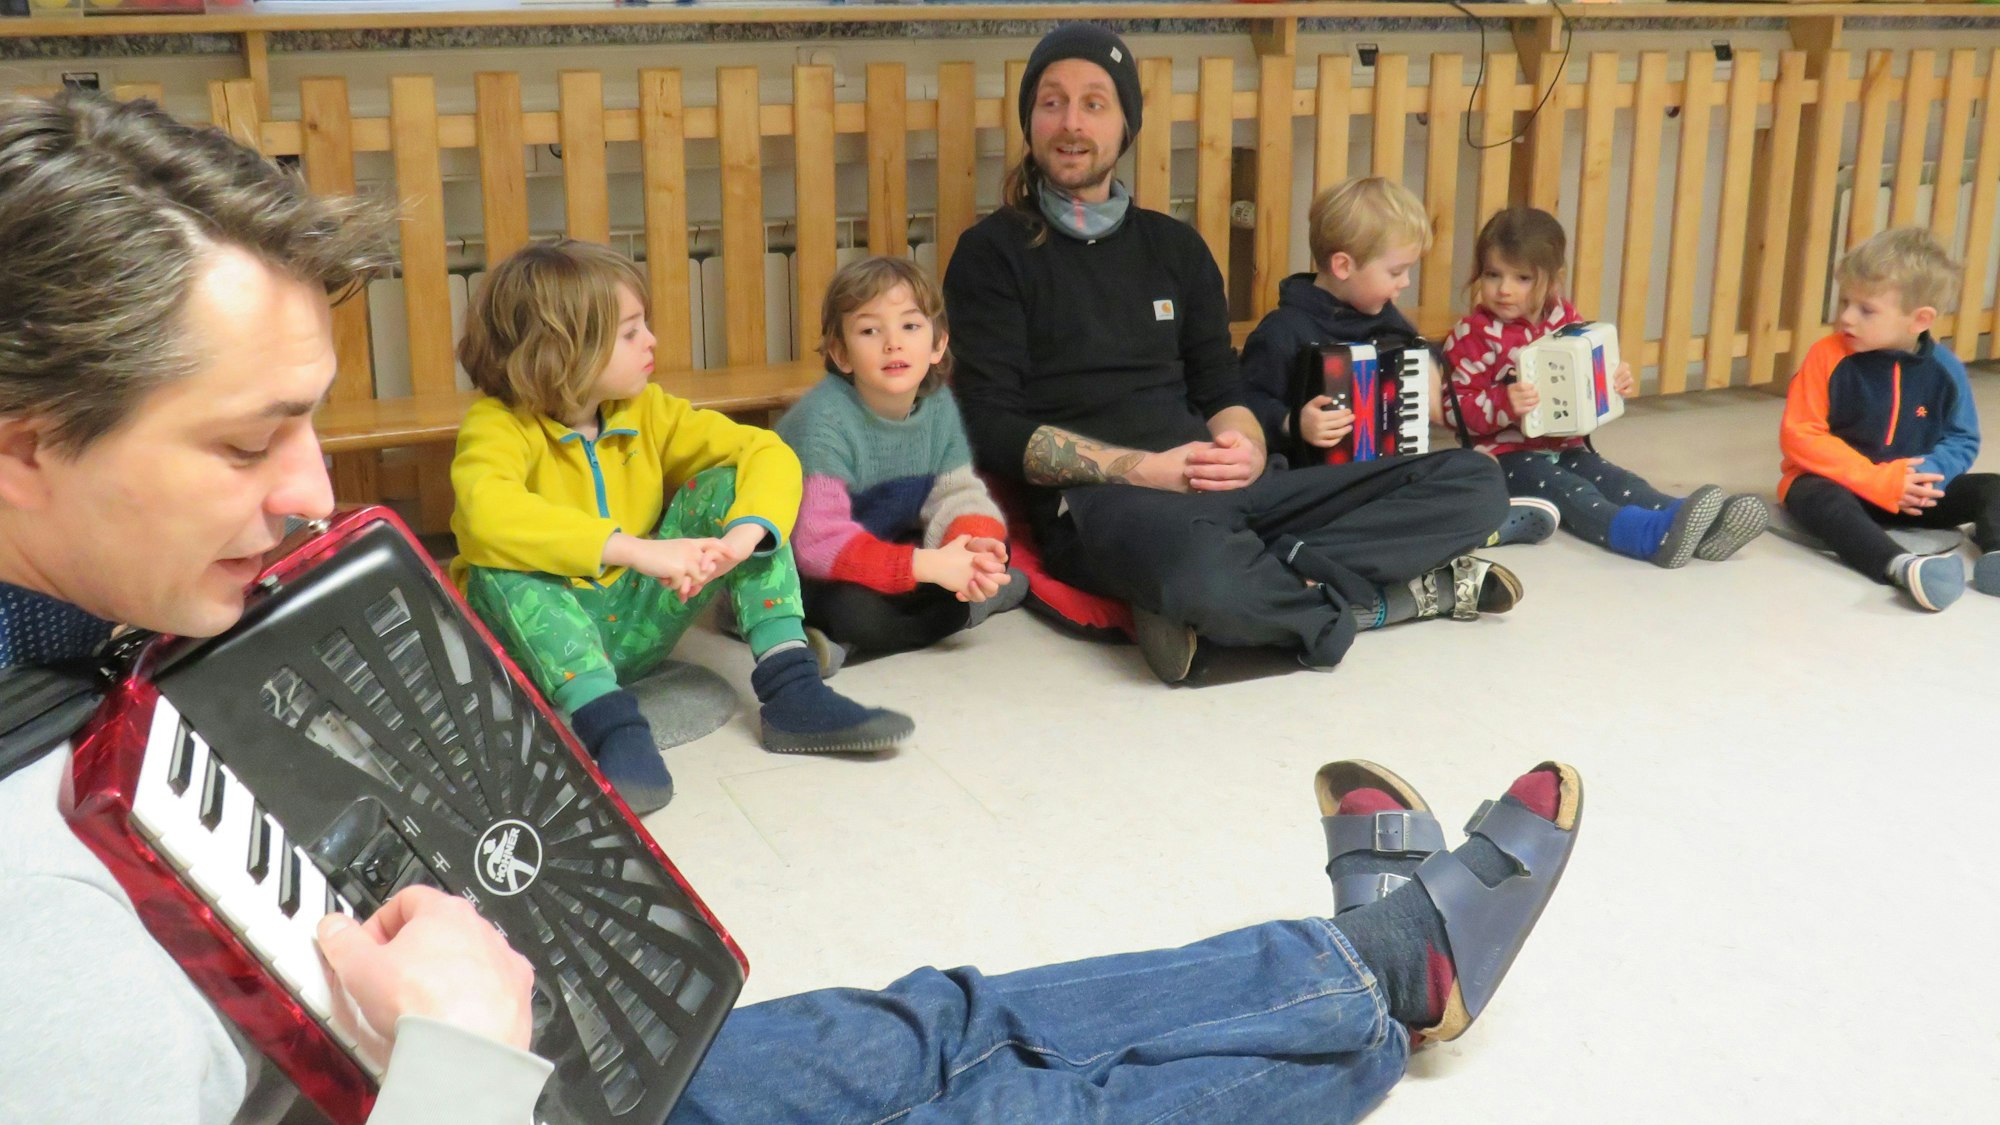 Kinder und zwei Erzieher sitzen auf dem Boden und singen gemeinsam. Ein Erzieher spielt auf einem Akkordeon.